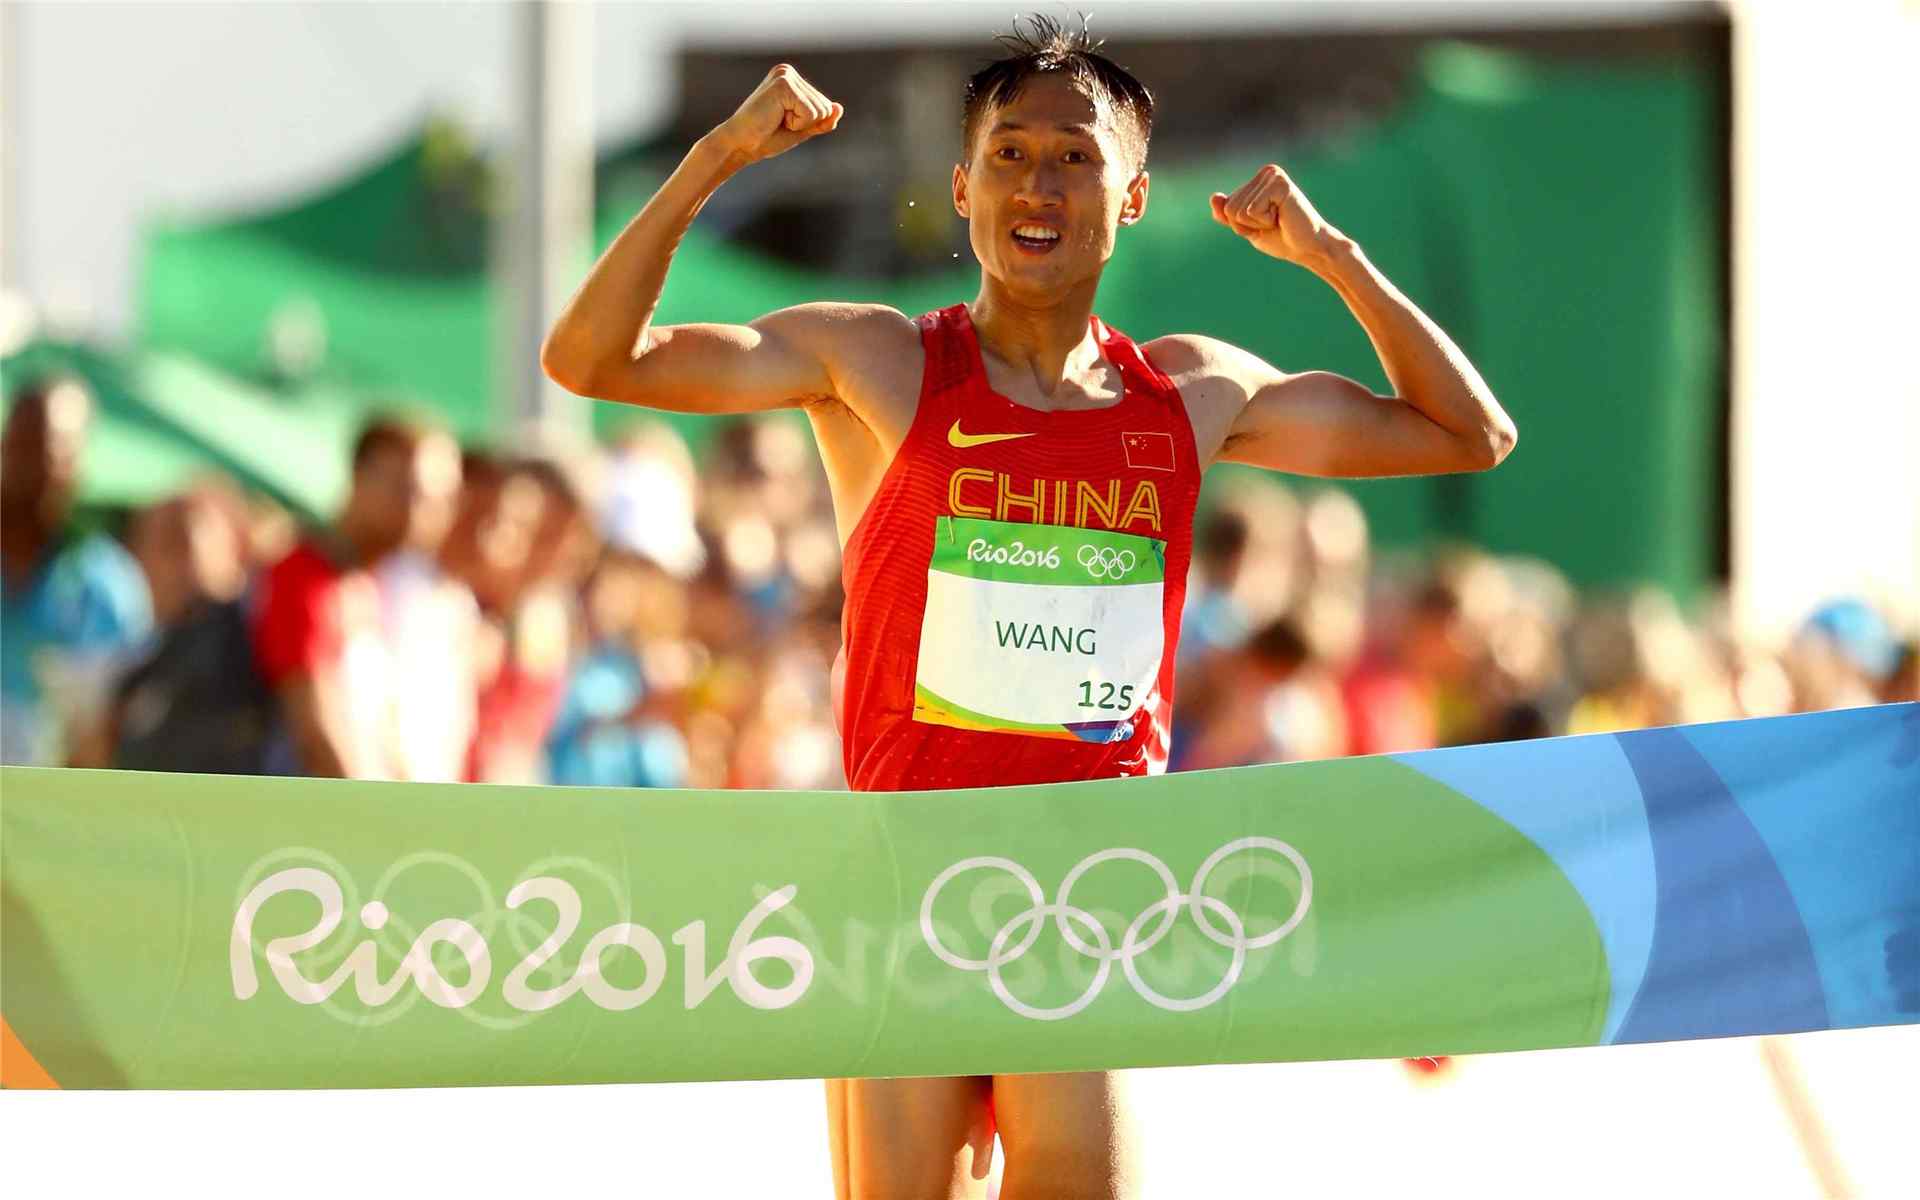 2016里约奥运冠军王镇马拉松比赛图片桌面壁纸